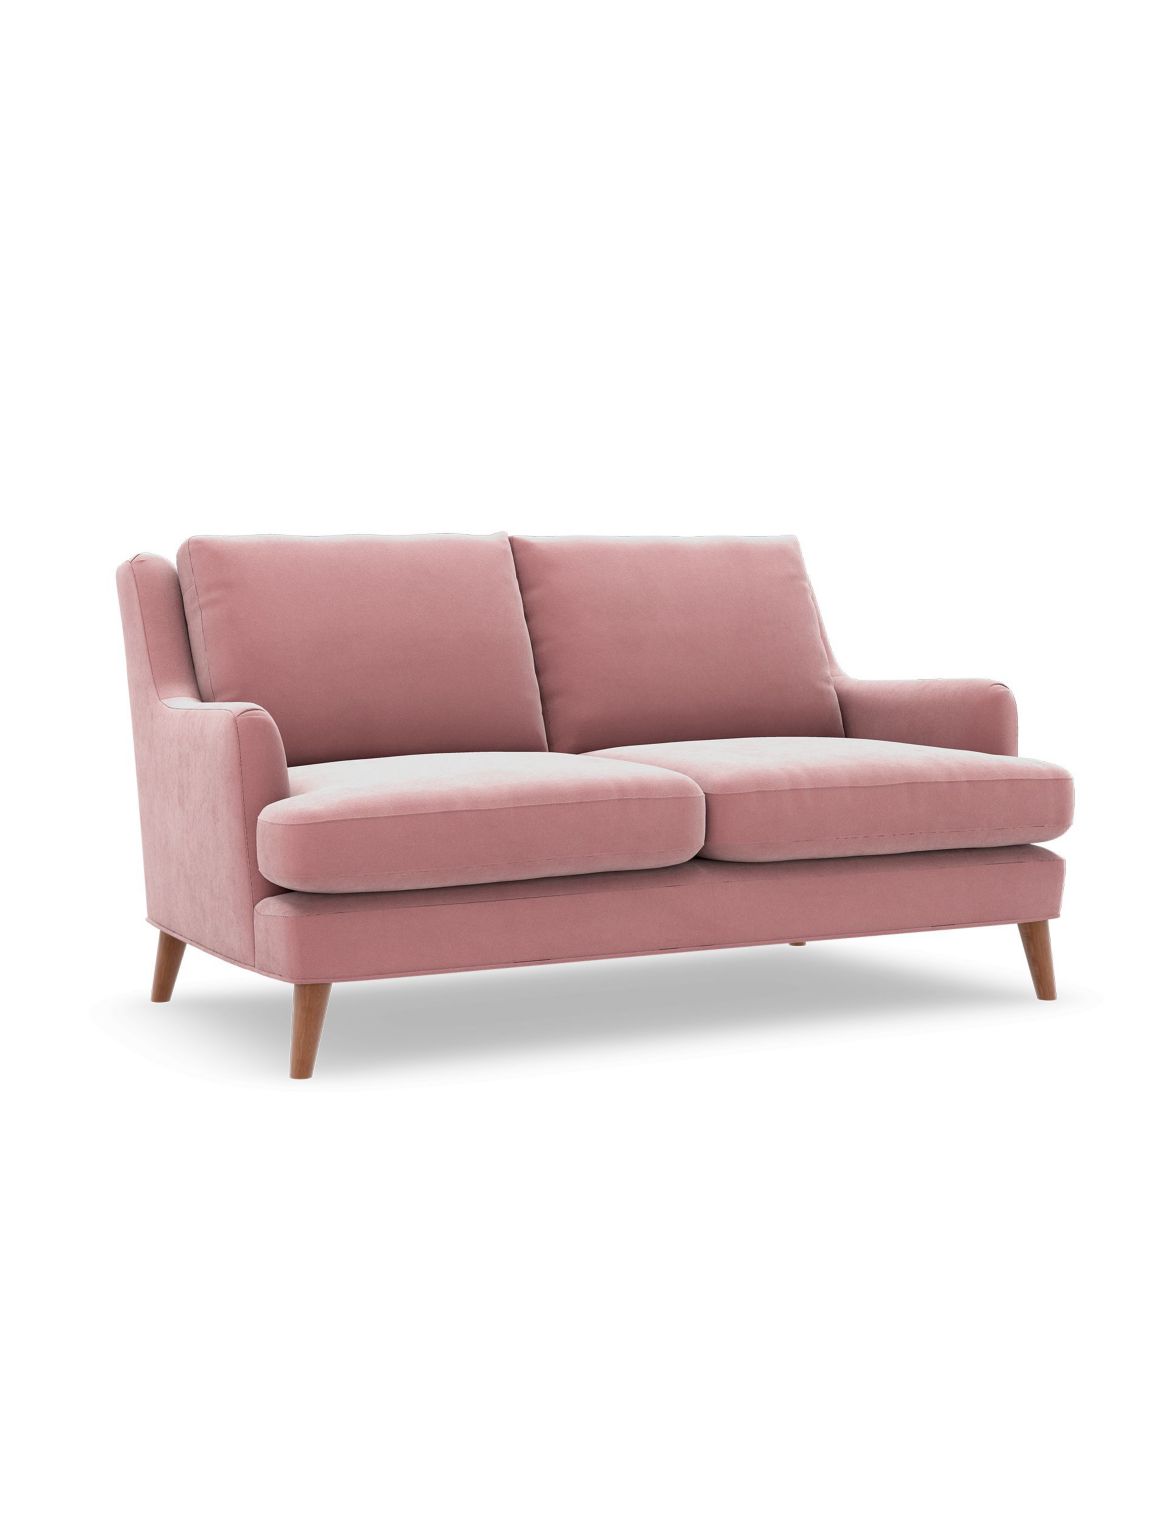 Ashton Small Sofa pink